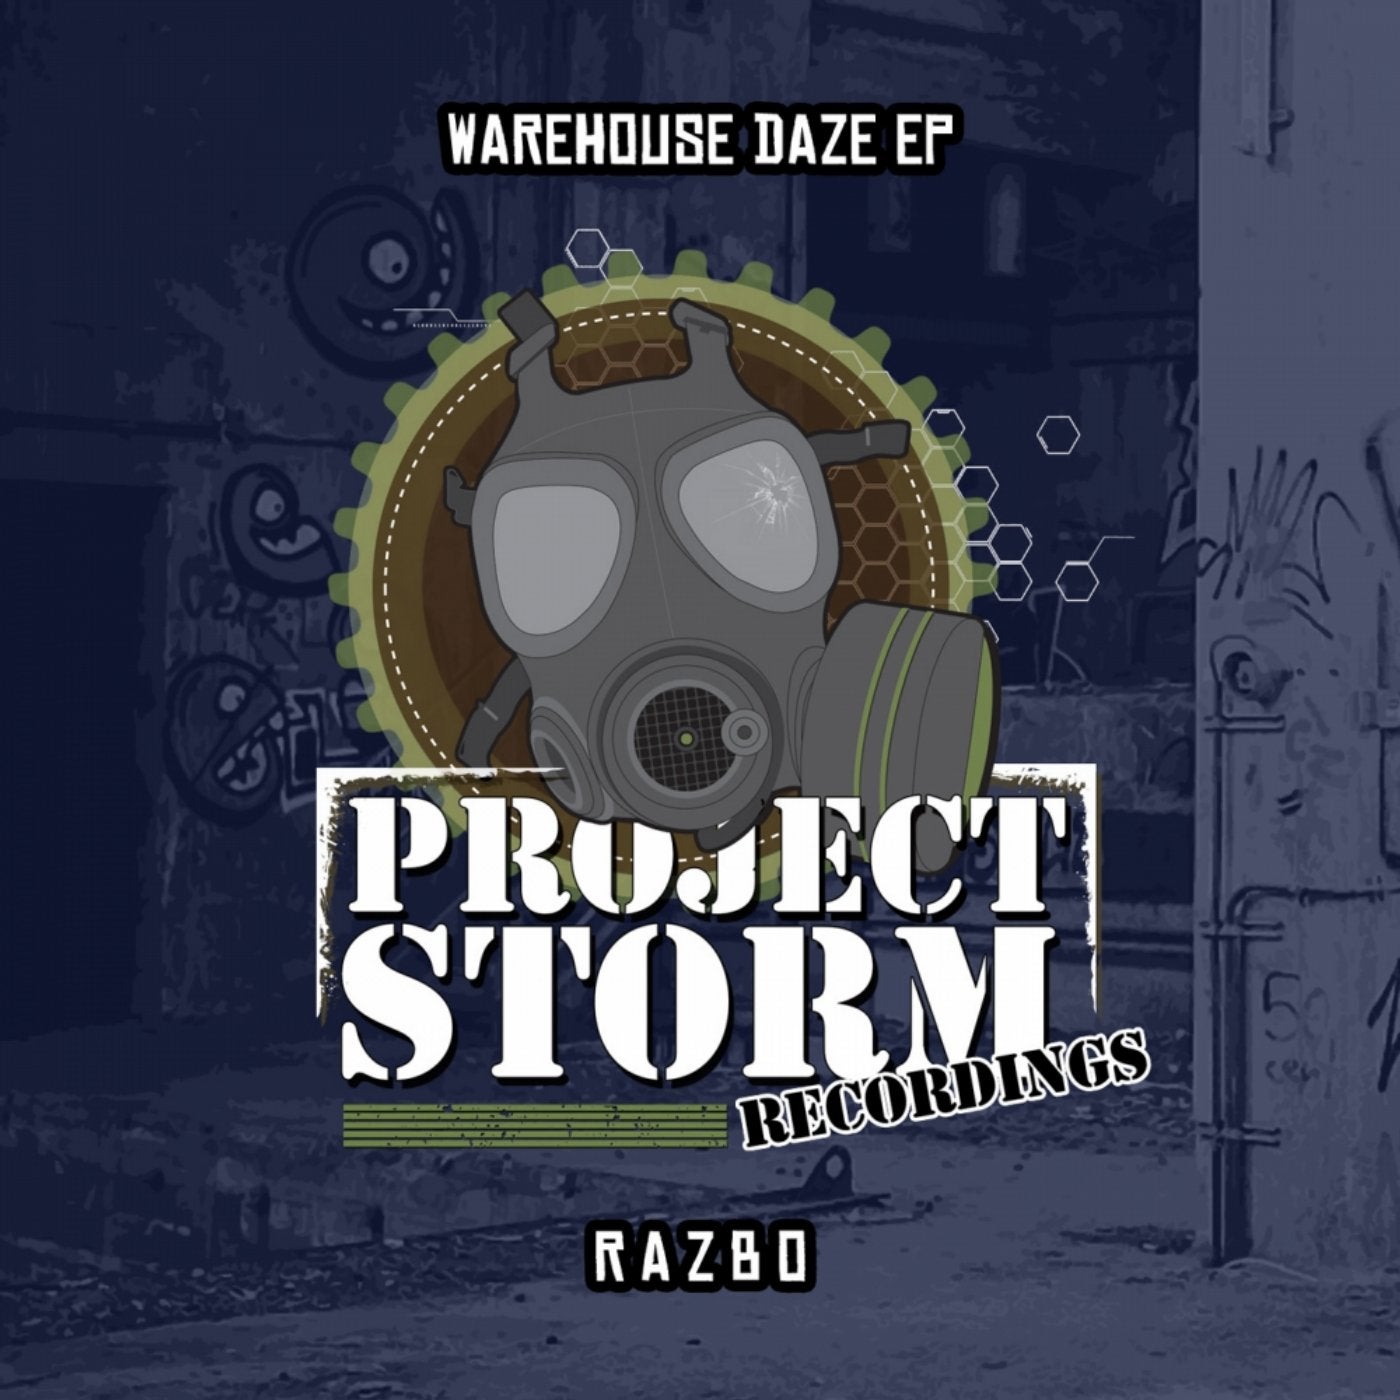 The Warehouse Daze EP